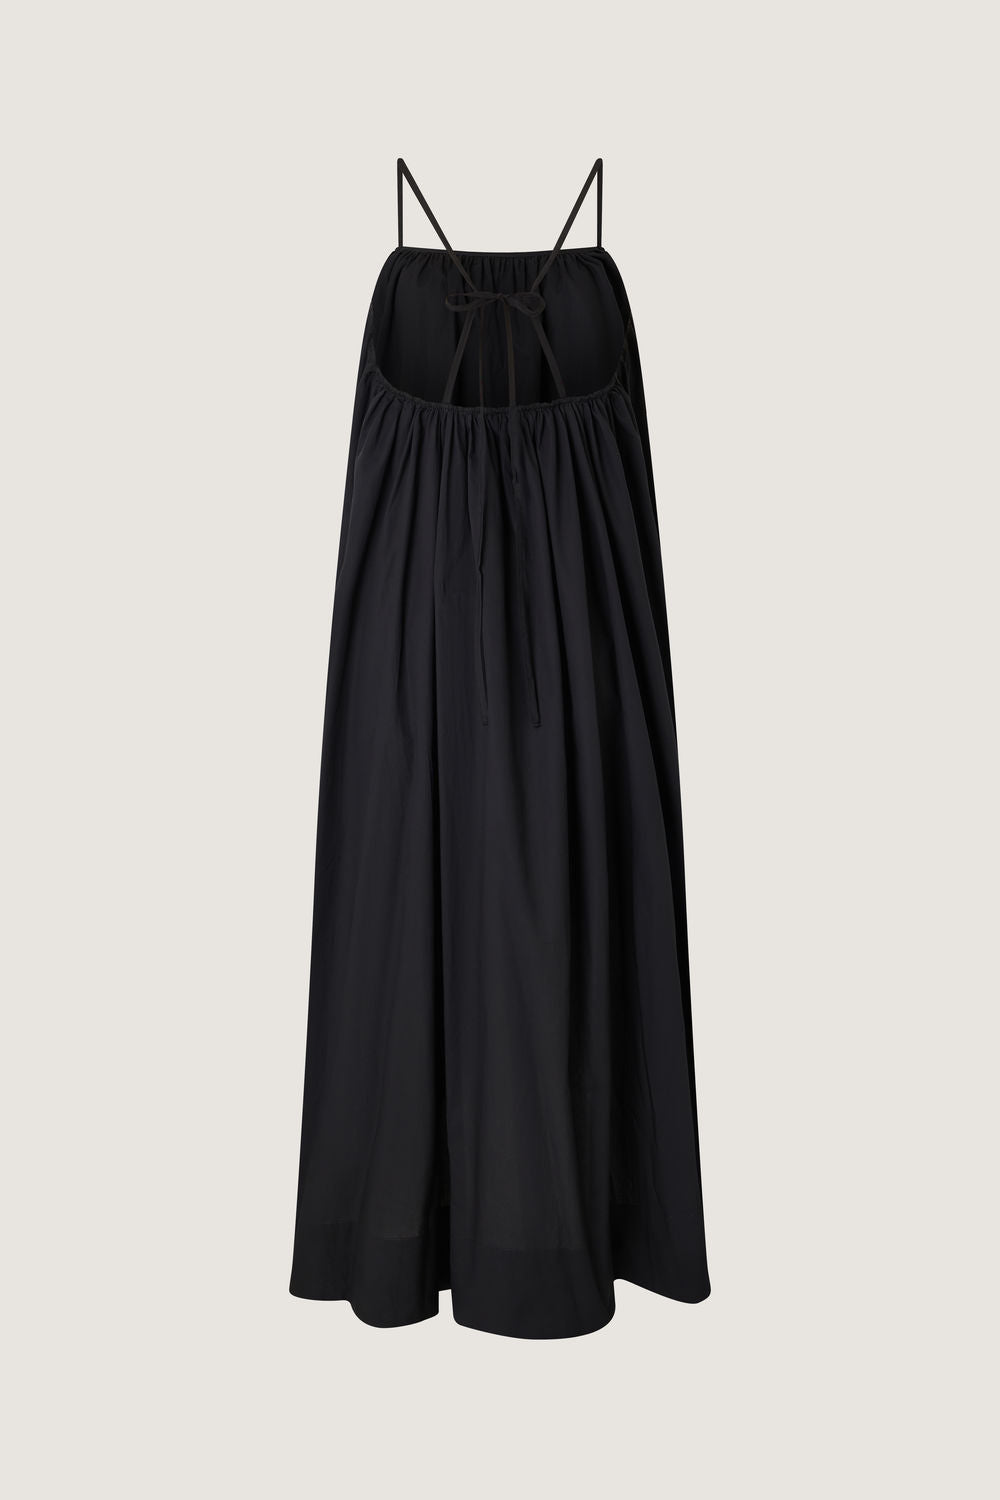 Robe Arielle - Noir - Coton - Femme